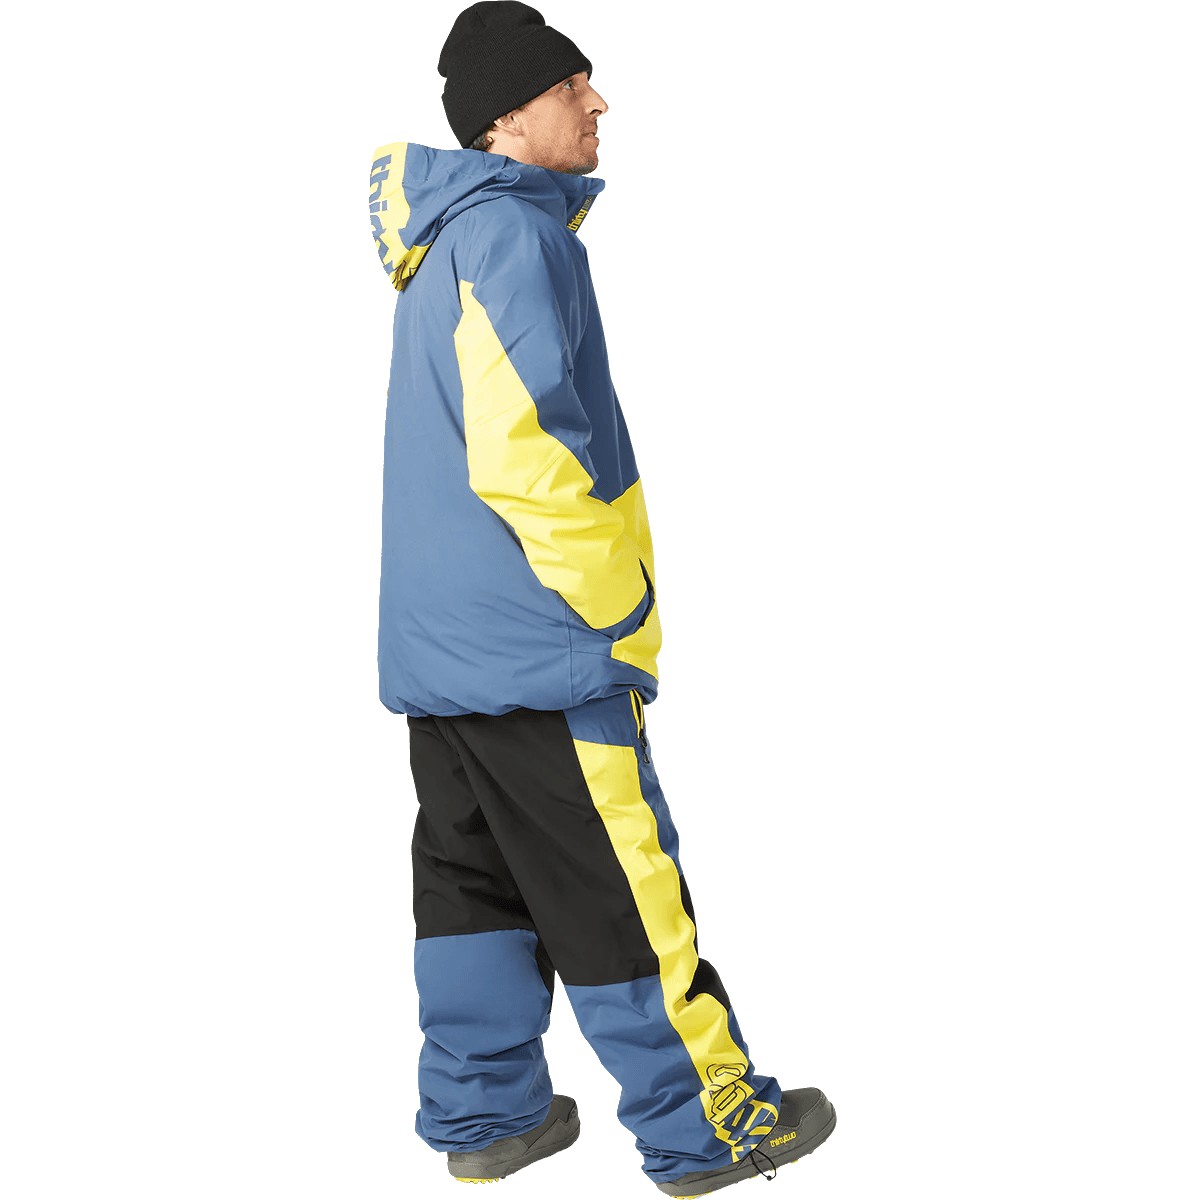 thirtytwo Lashed Insulated Ski/Snowboard Jacket